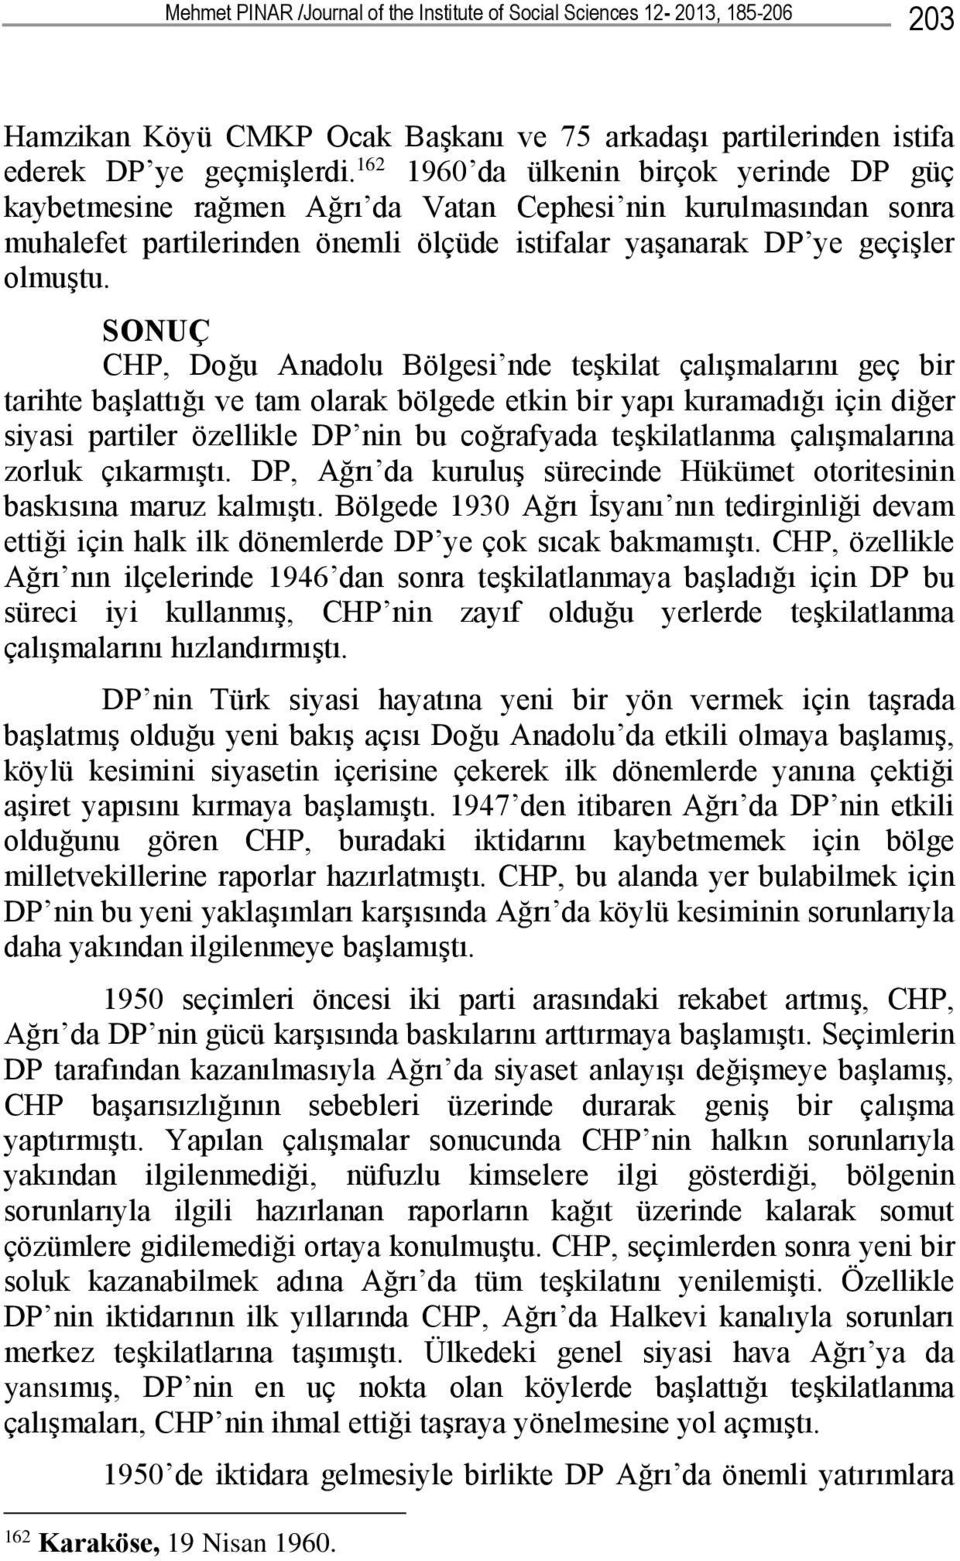 SONUÇ CHP, Doğu Anadolu Bölgesi nde teşkilat çalışmalarını geç bir tarihte başlattığı ve tam olarak bölgede etkin bir yapı kuramadığı için diğer siyasi partiler özellikle DP nin bu coğrafyada